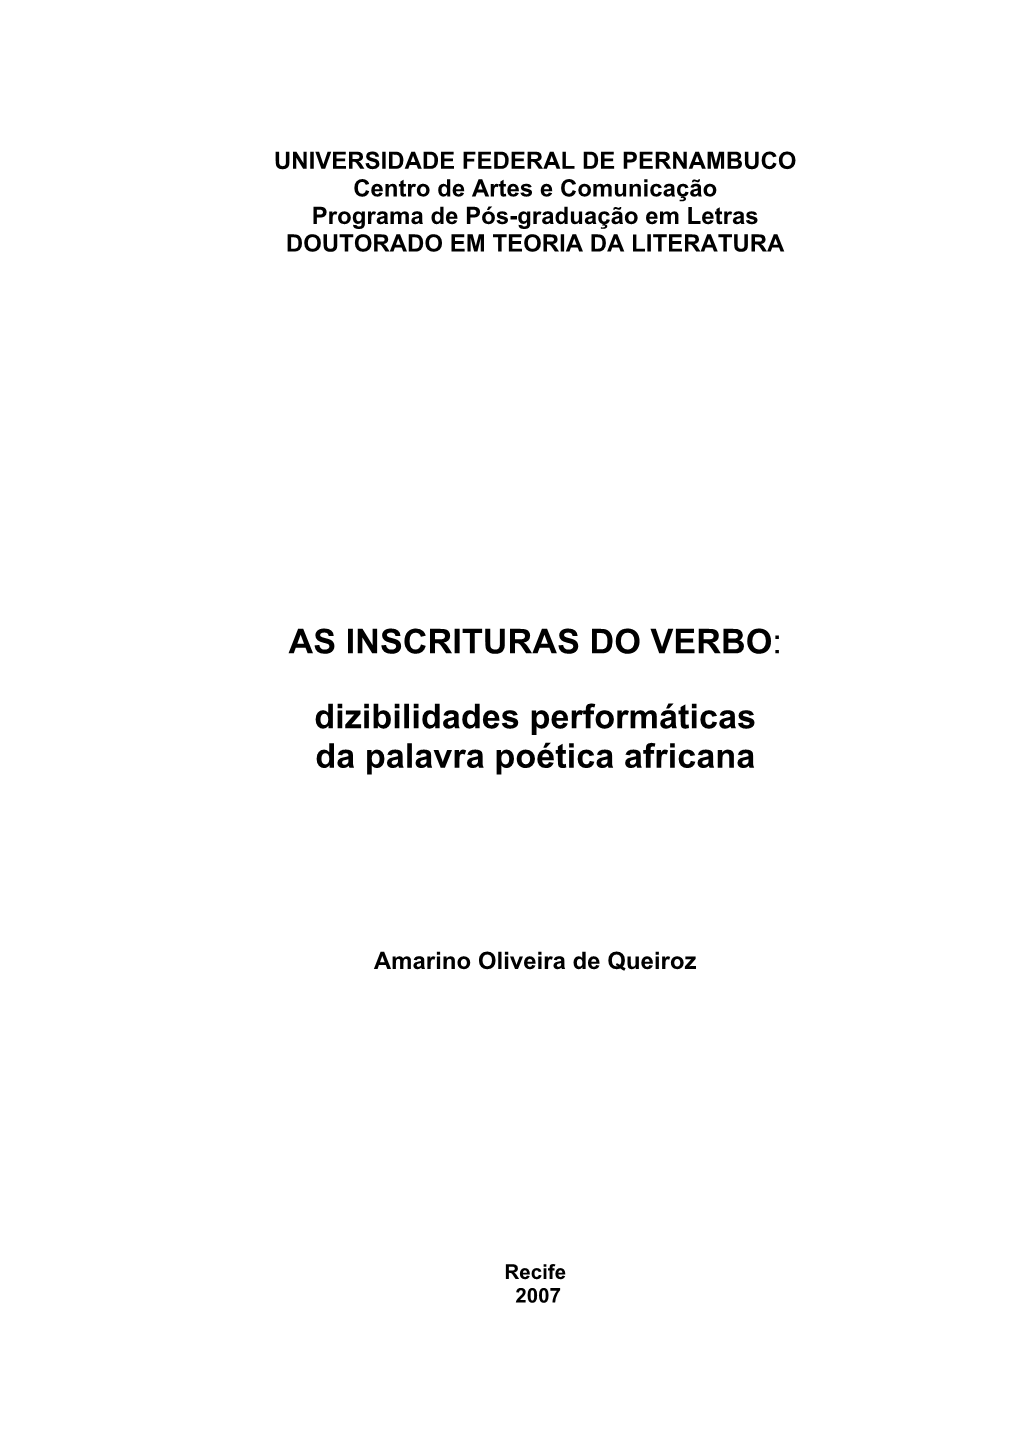 UNIVERSIDADE FEDERAL DE PERNAMBUCO Centro De Artes E Comunicação Programa De Pós-Graduação Em Letras DOUTORADO EM TEORIA DA LITERATURA